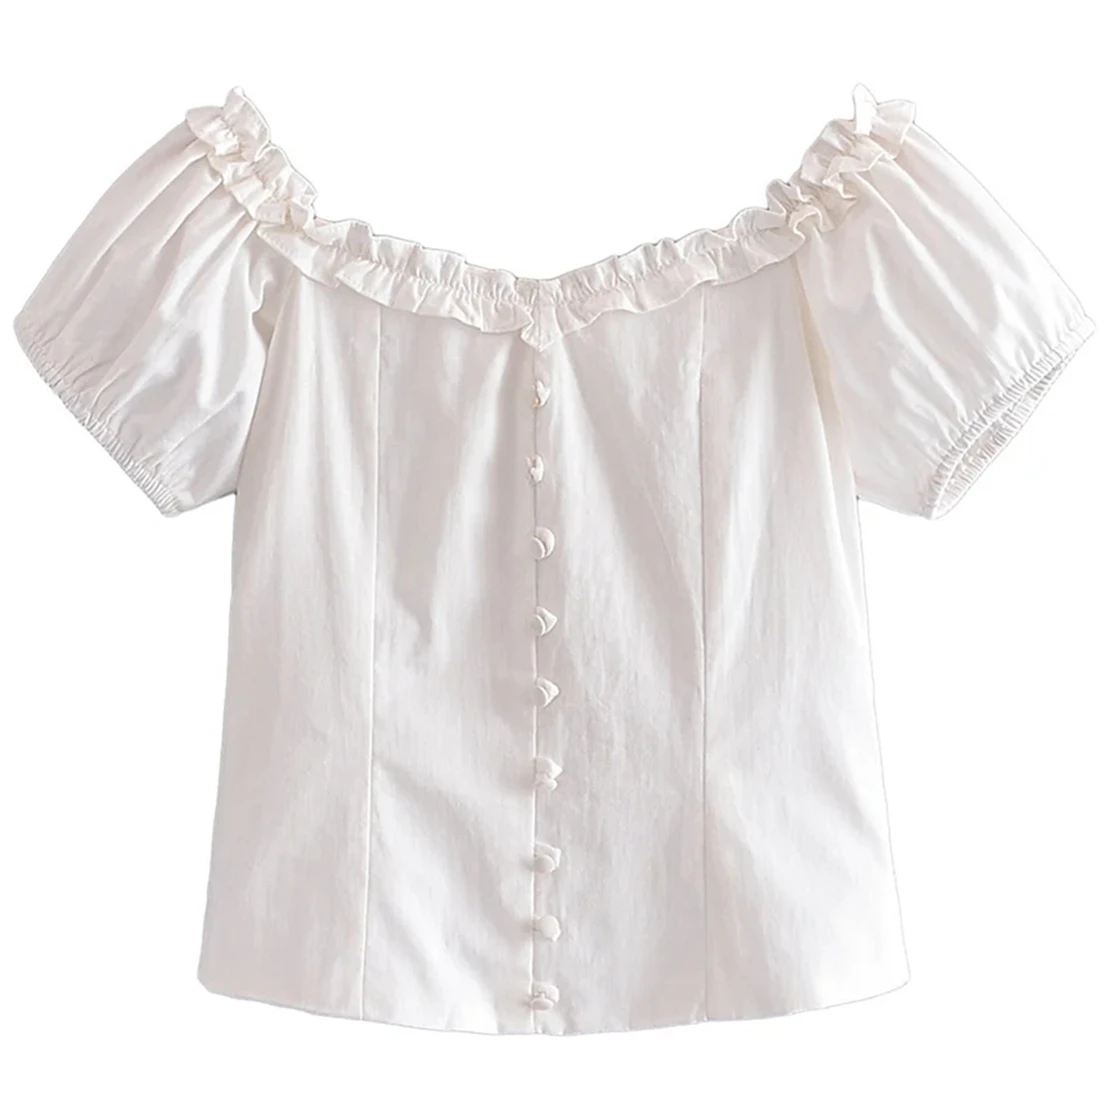 

Элегантная блузка в стиле Инди с открытыми плечами и оборками, из чистого белого хлопка